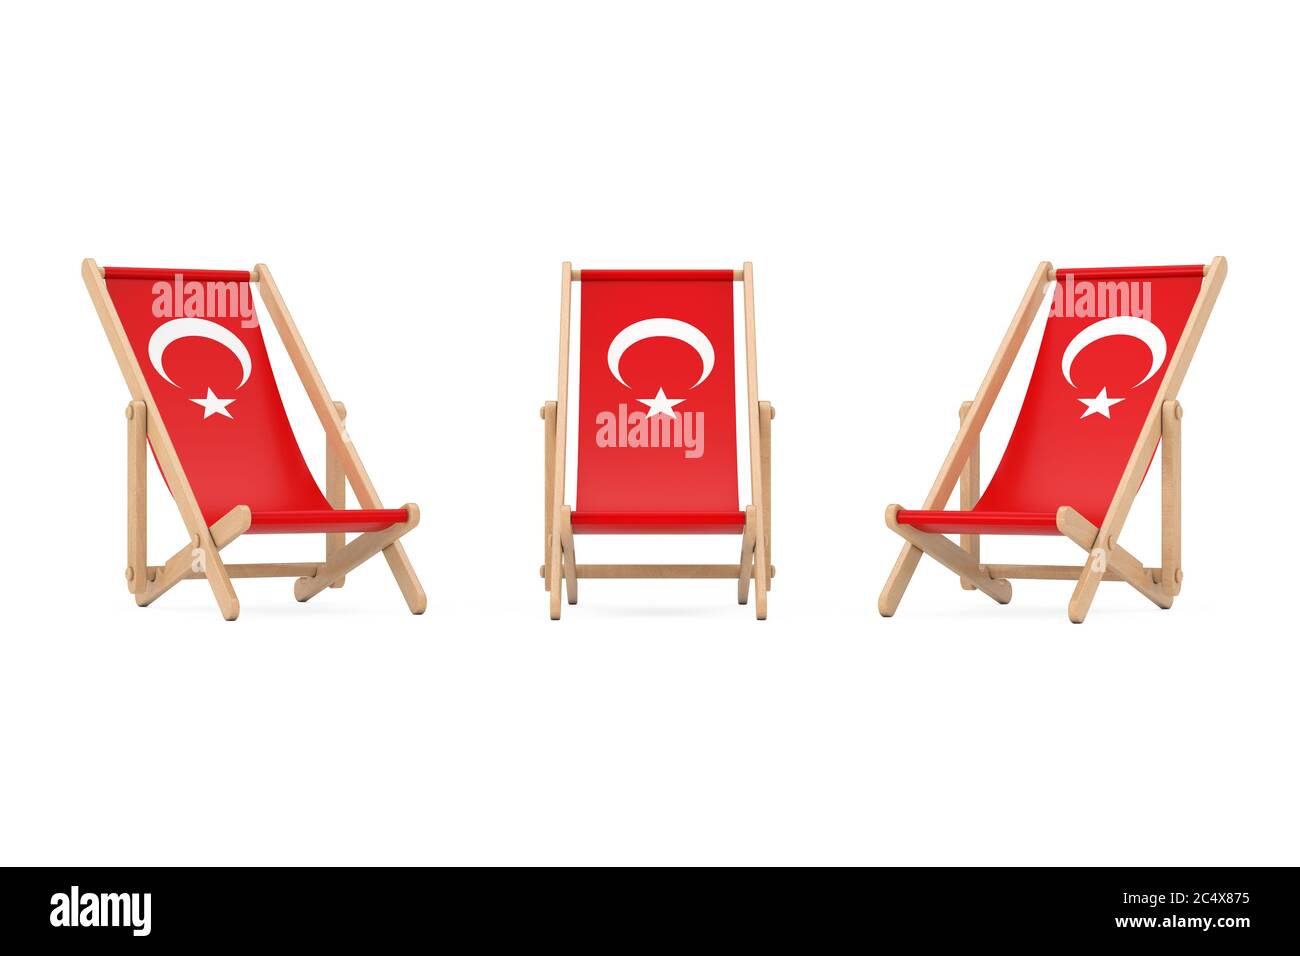 Strandstuhl aus Holz mit türkischem Flag-Design auf weißem Hintergrund. 3d-Rendering Stockfoto